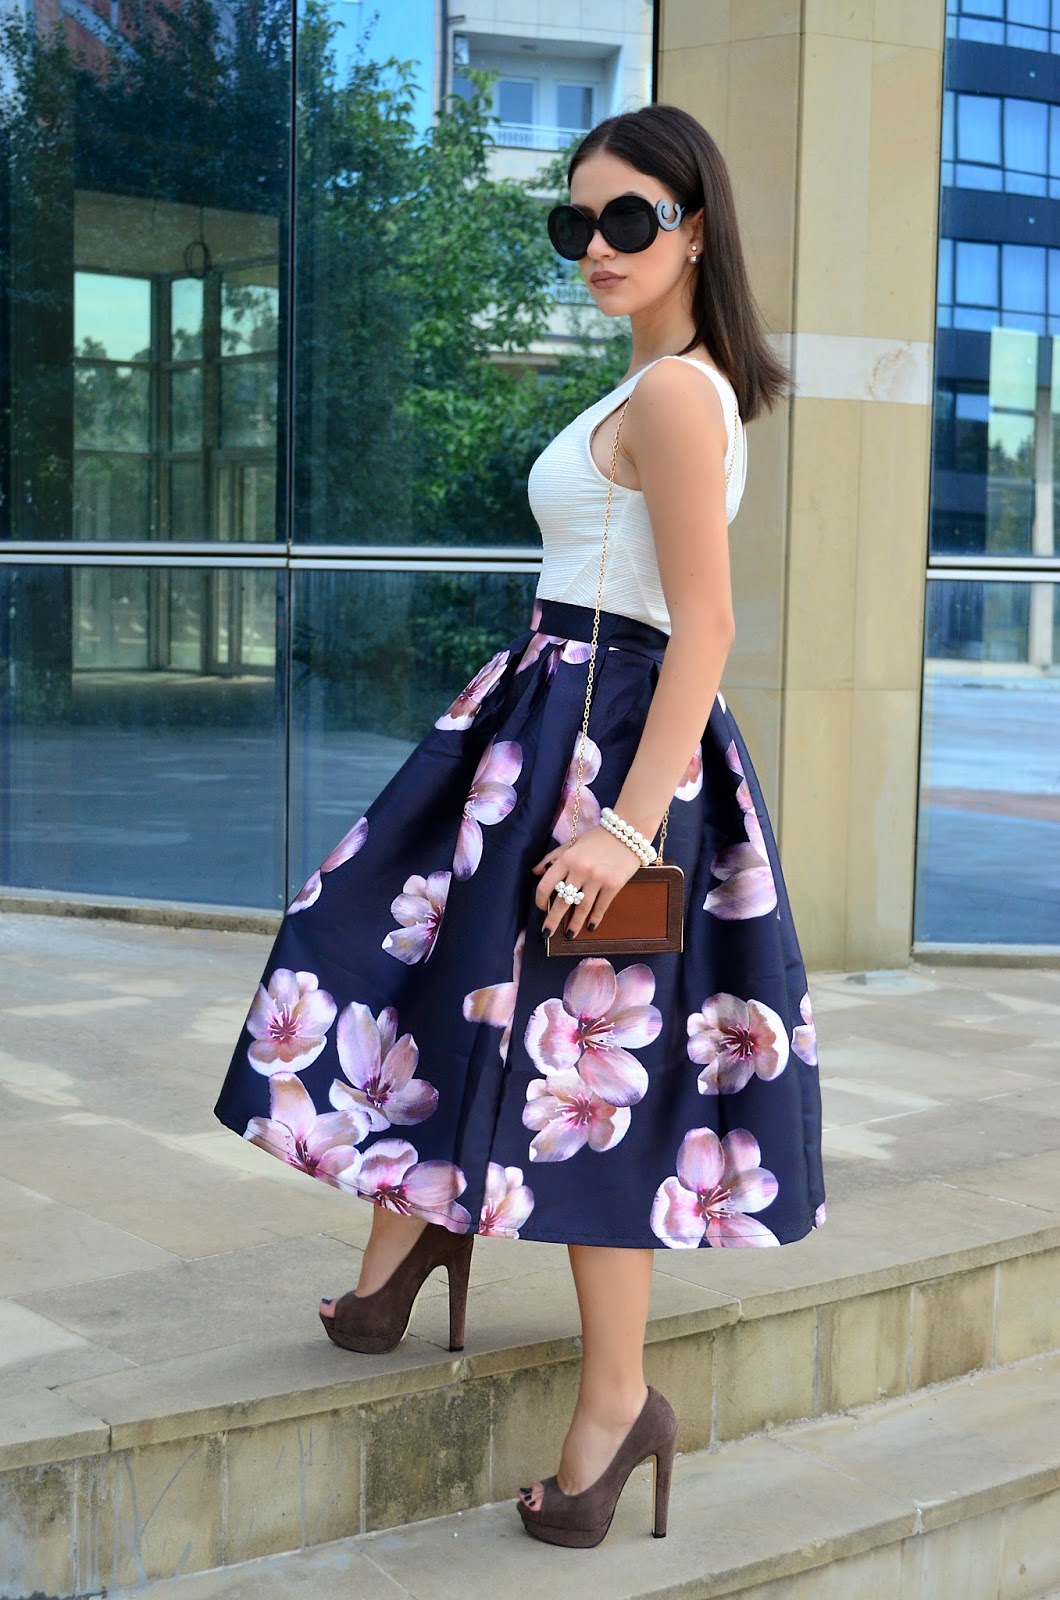 FFS | Floral flare skirt | G L A M B R I G H T